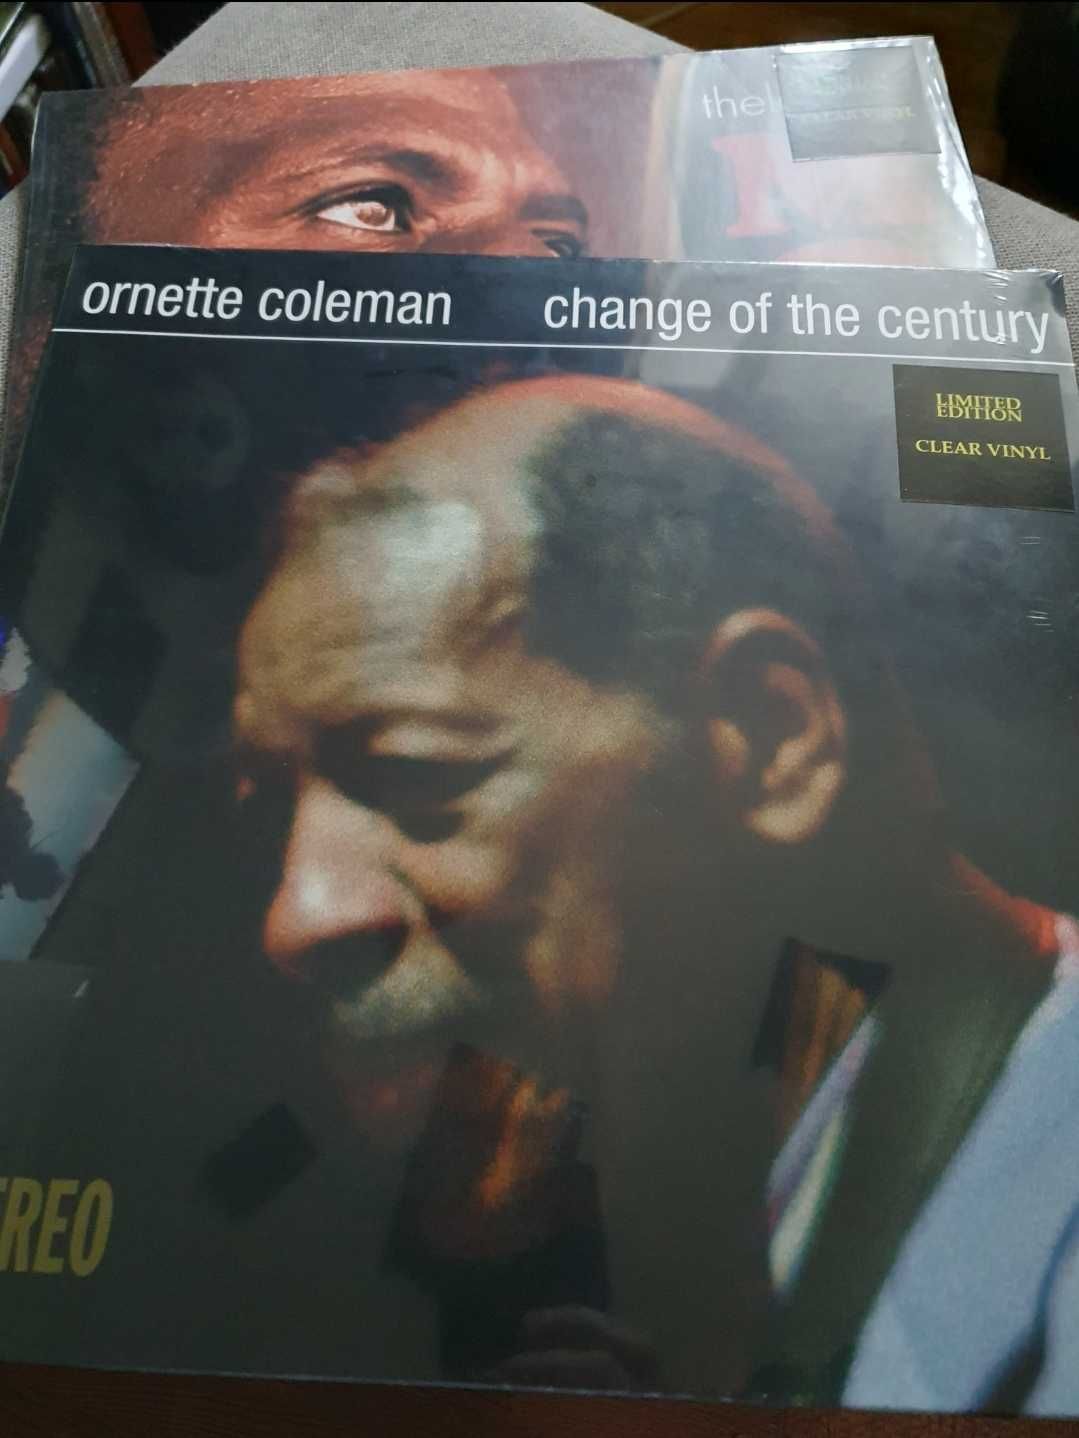 Stan getz / João Gilberto 
Edição veve
Thelonious monk
Ornette Coleman